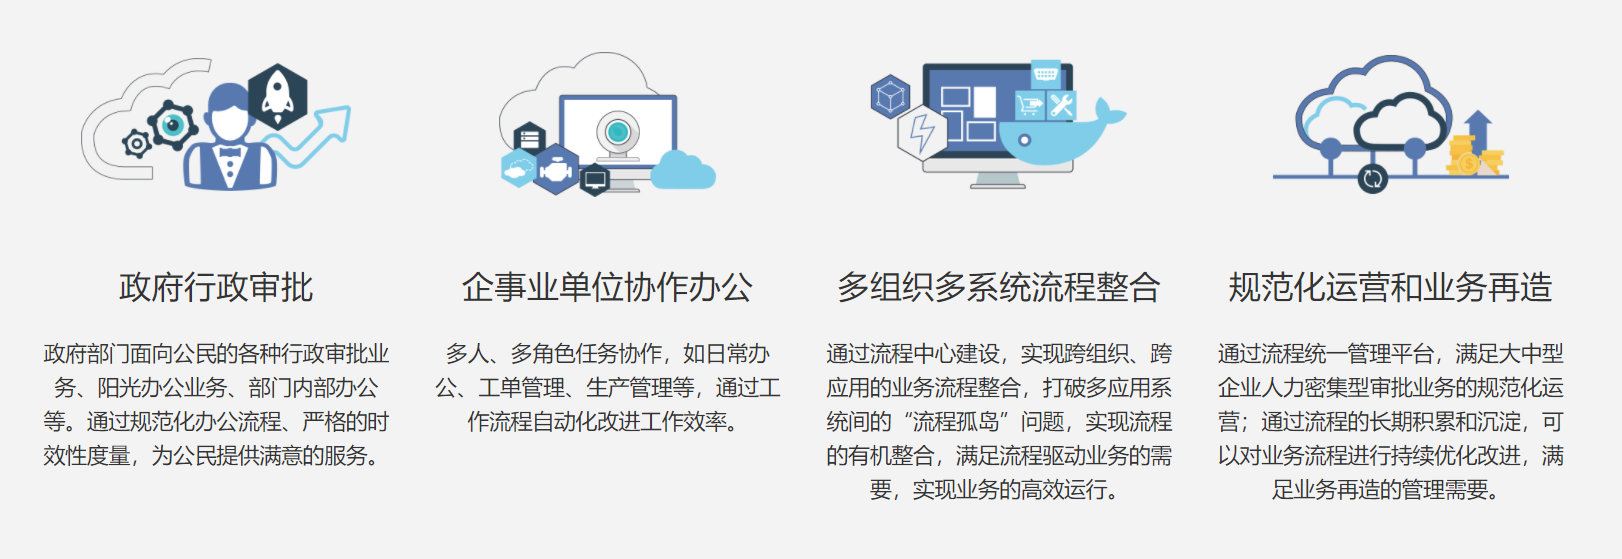 上海天策長(cháng)利信息科技有限公司提供信息門戶系統,信息系統建設,信息系統開(kāi)發(fā)等方案及業務